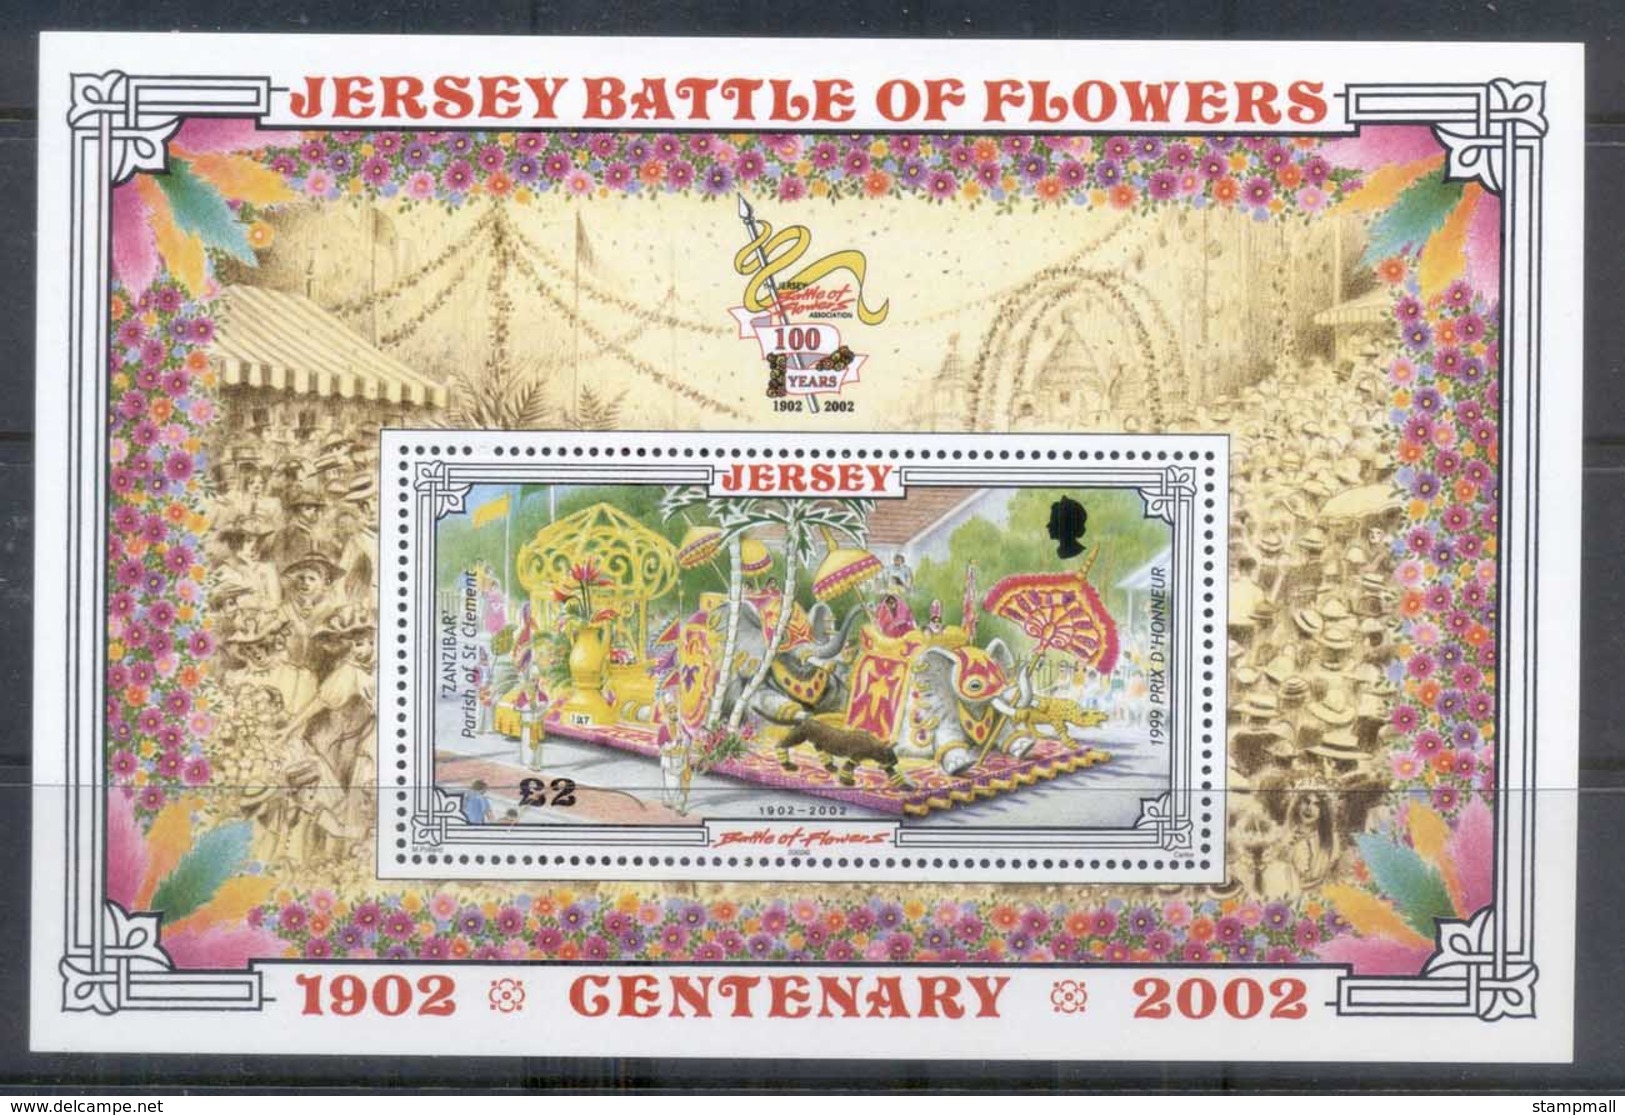 Jersey 2002 Battle Of Flowers MS MUH - Jersey